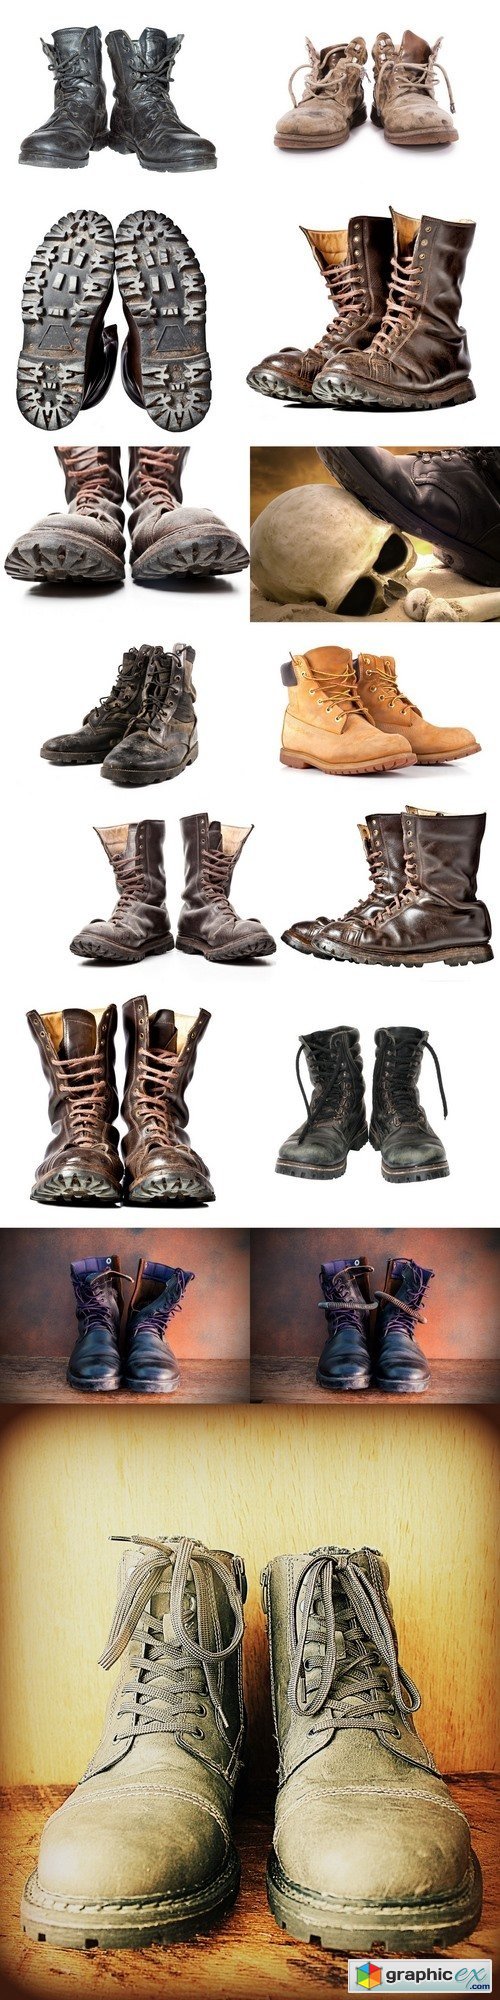 Combat boot